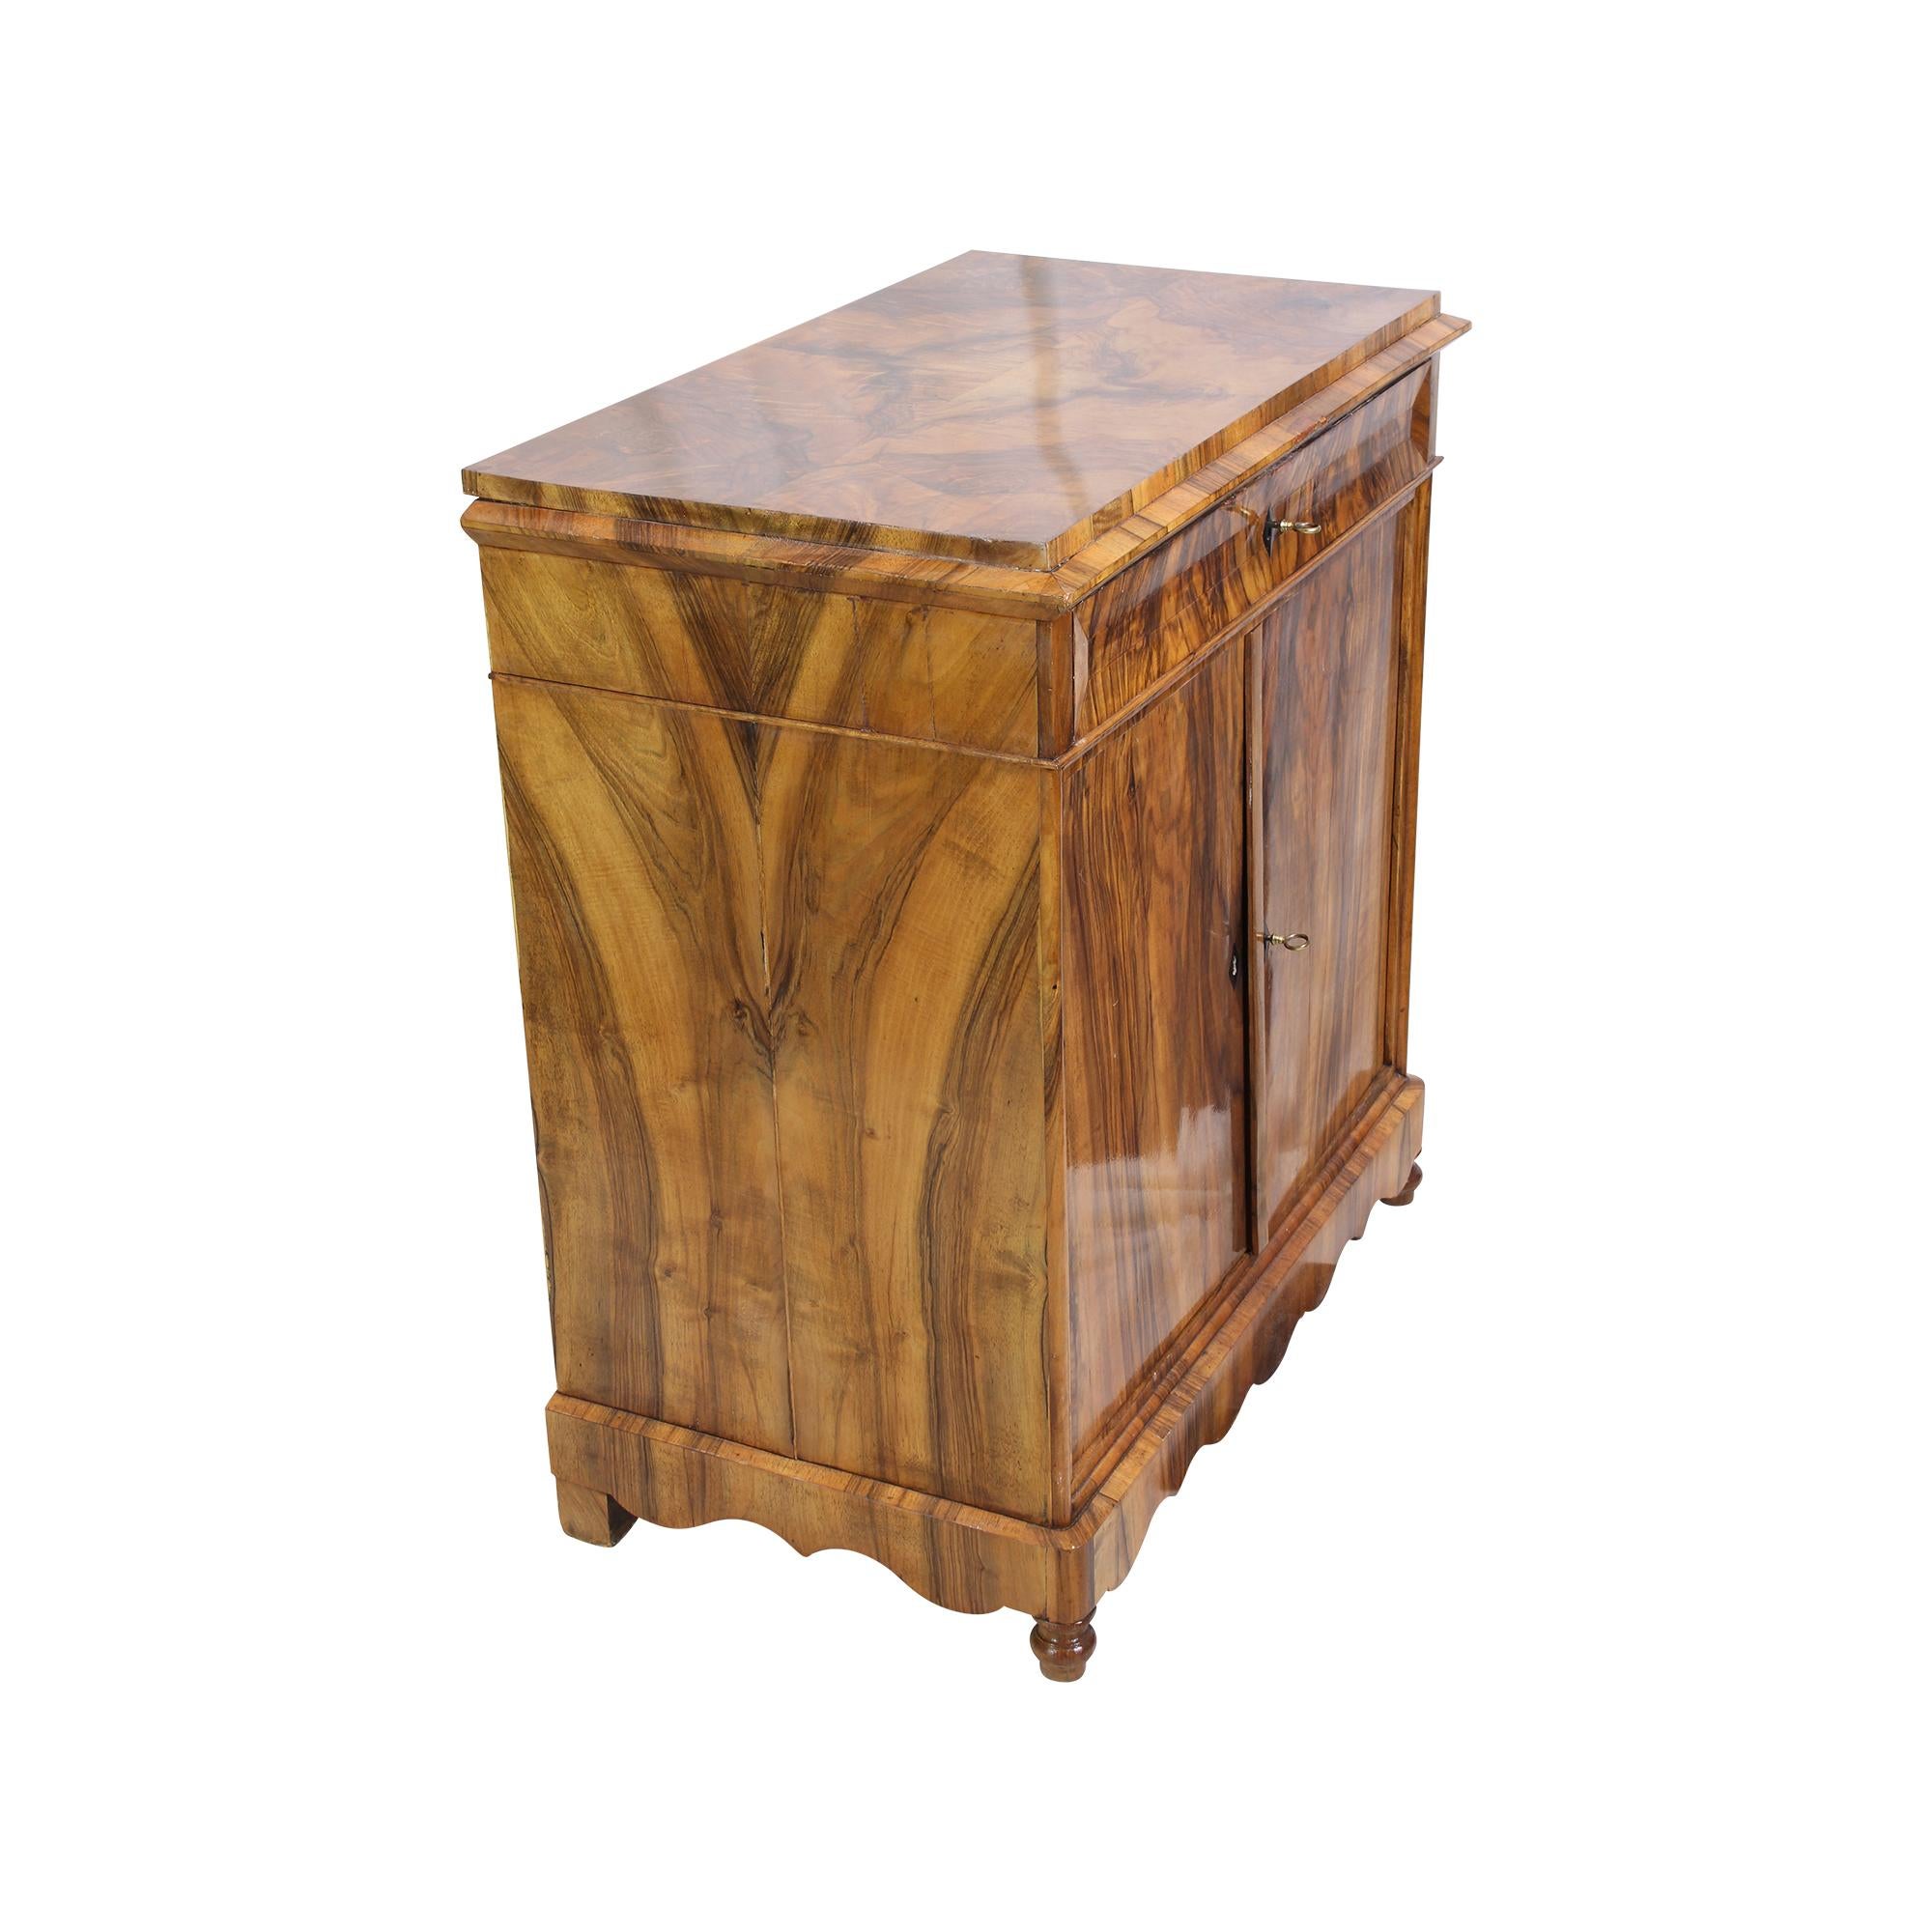 Schöner Biedermeier Halbschrank aus der Biedermeierzeit um 1830. Die Möbel sind mit schönem Nussbaumfurnier mit einem schönen durchgehenden Furniermuster auf einem Fichtenkorpus überzogen.
Oben gibt es eine Schublade und unten zwei Türen. Der Körper